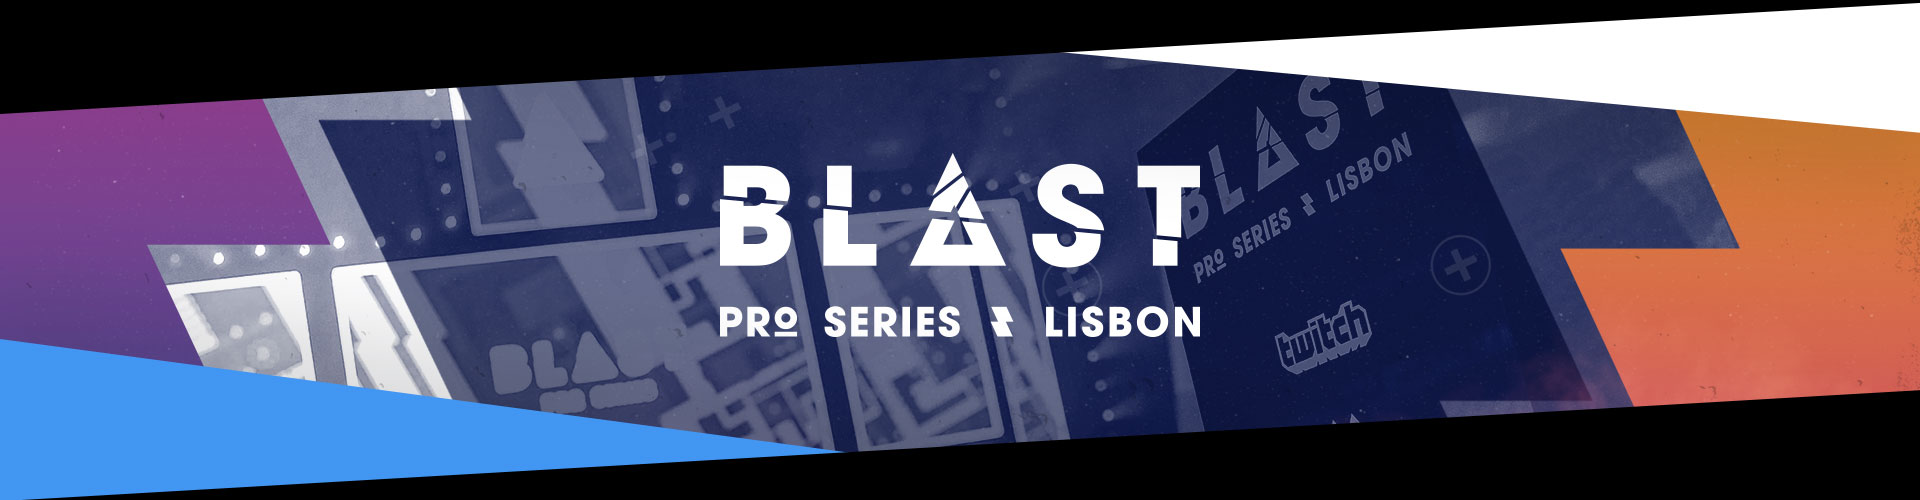 BLAST Pro Series i CS:GO har spelats klart i Lissabon